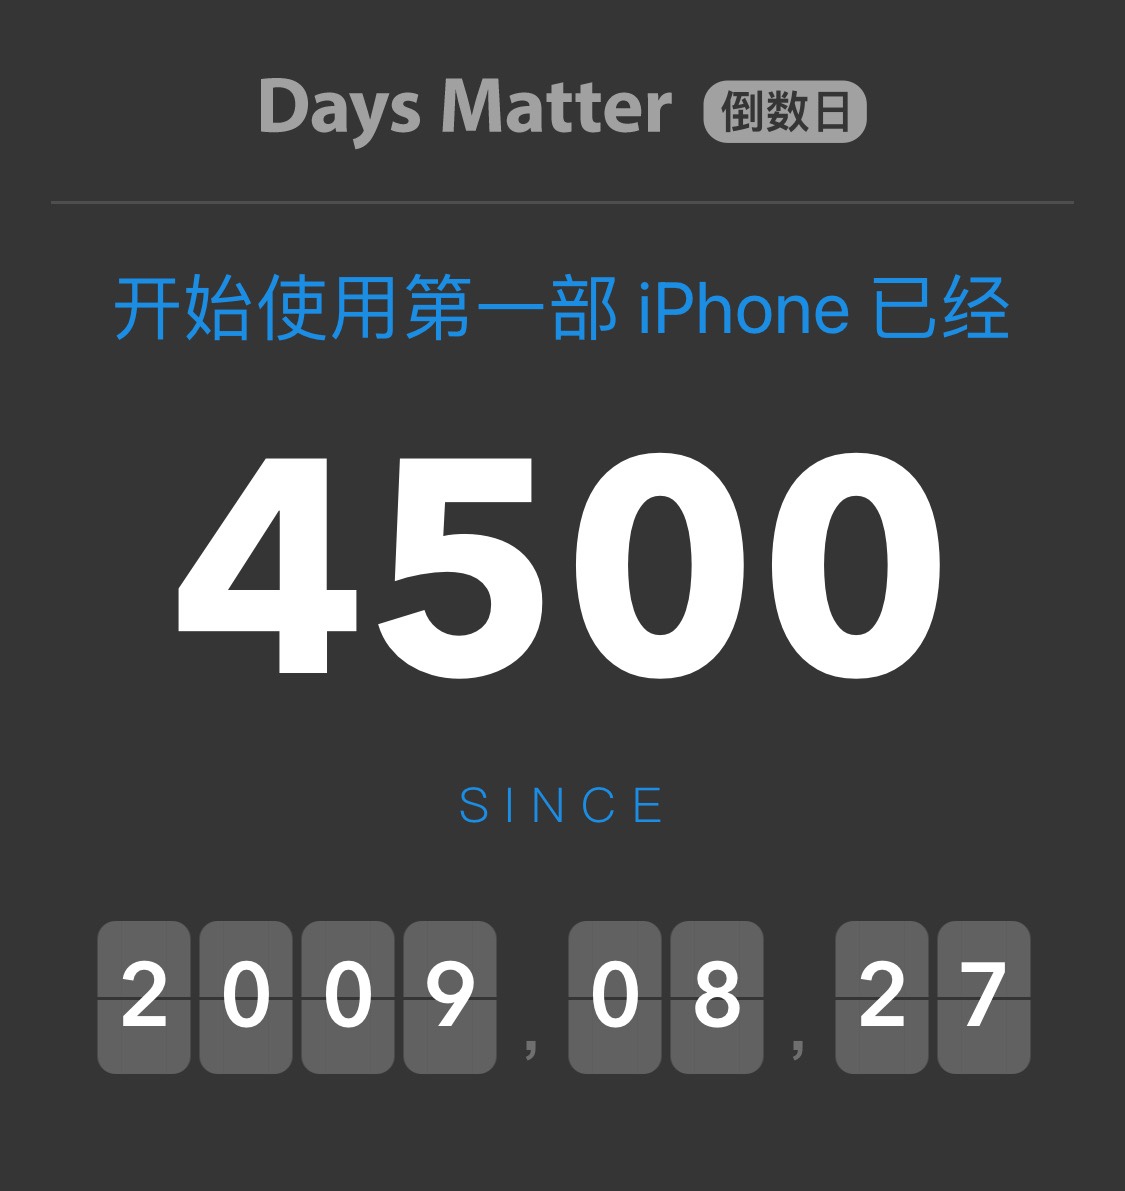 转眼 iPhone 已经陪伴了 4500 天